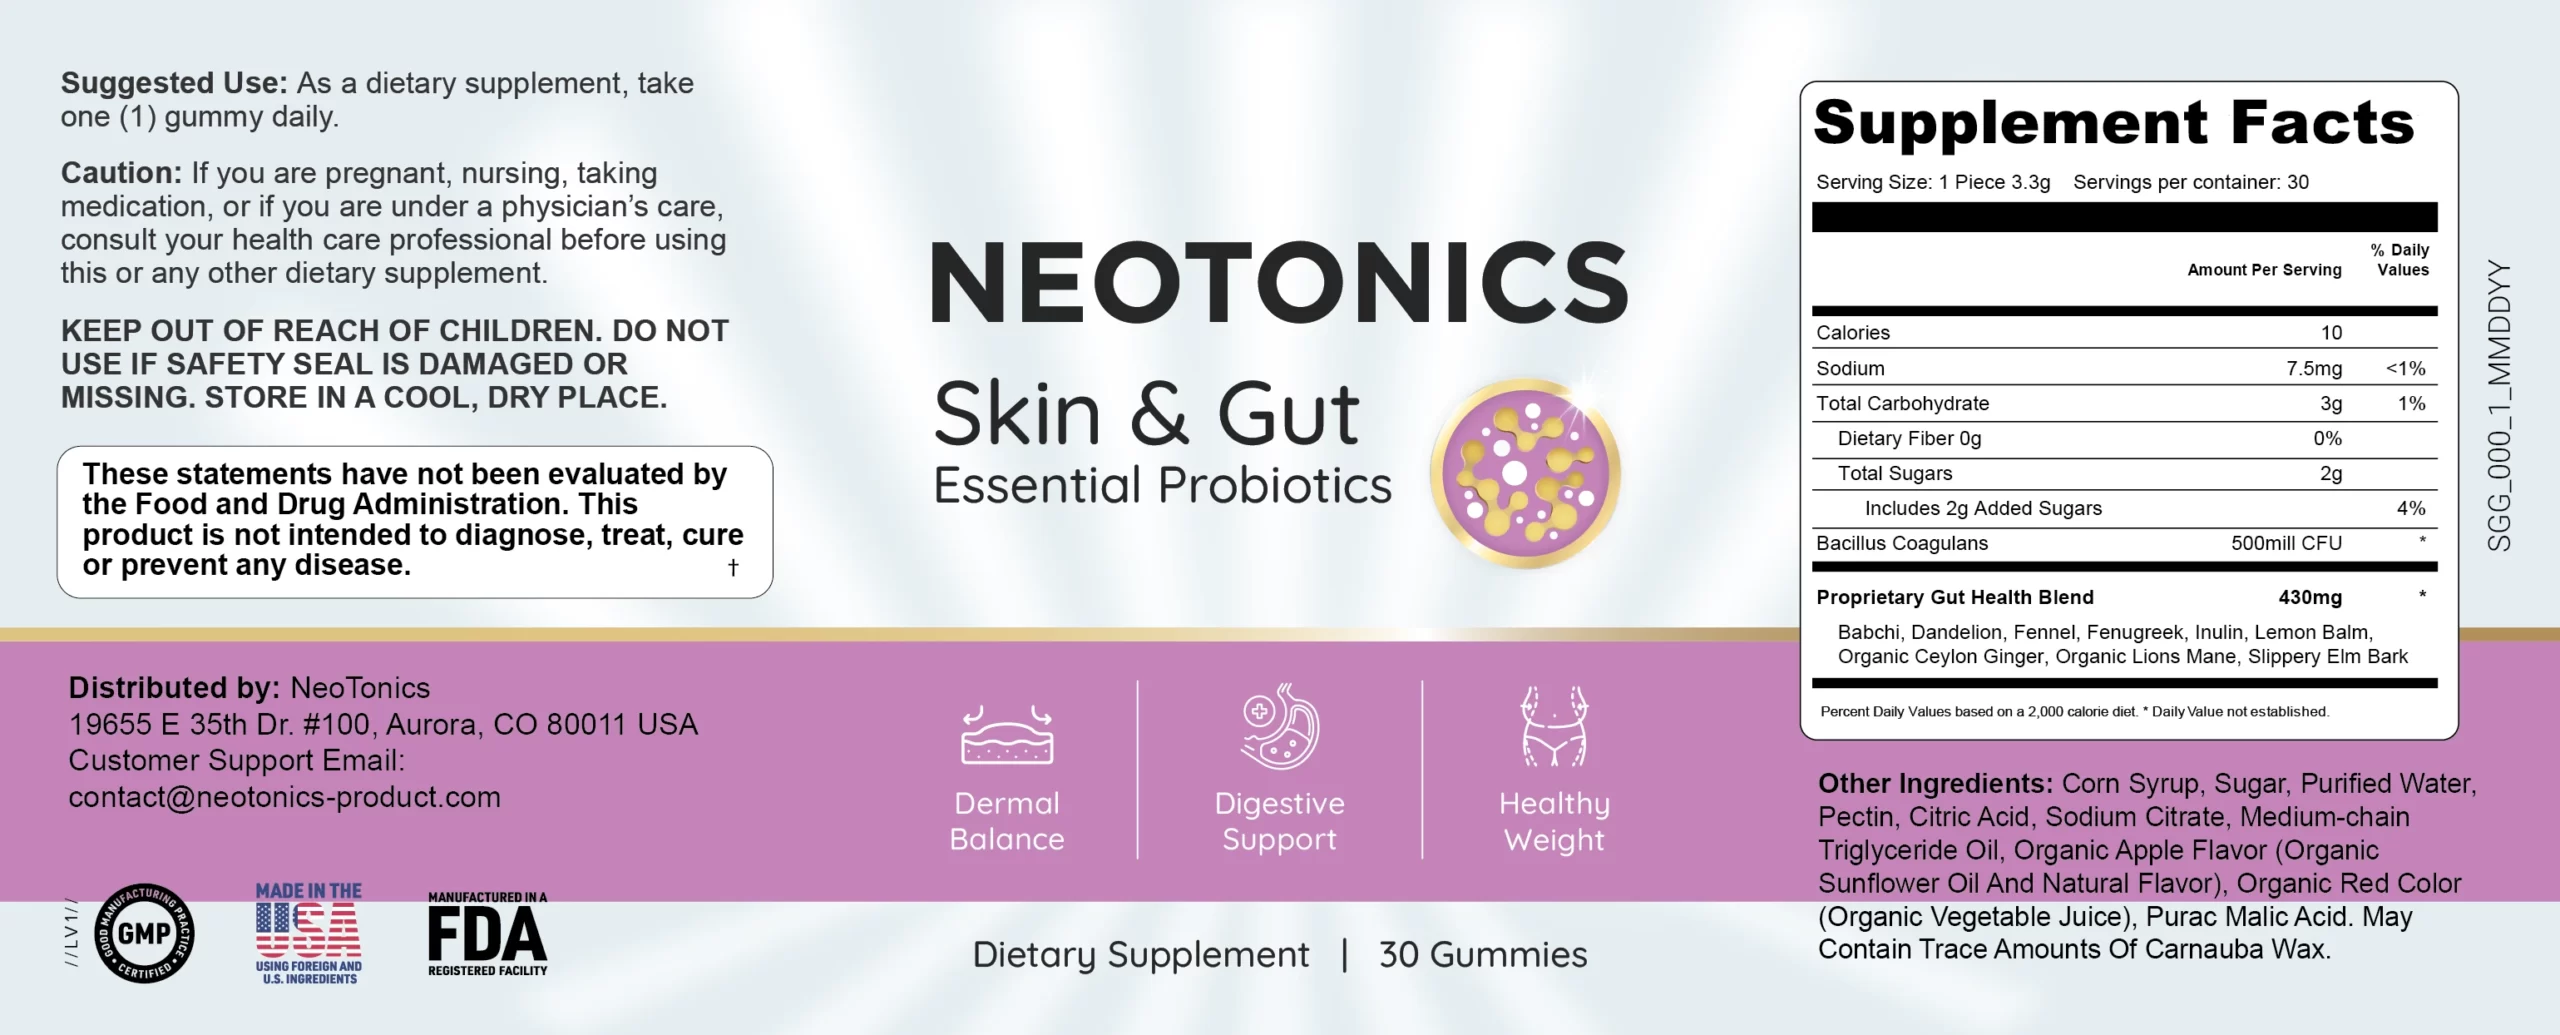 neotonics-ingredients